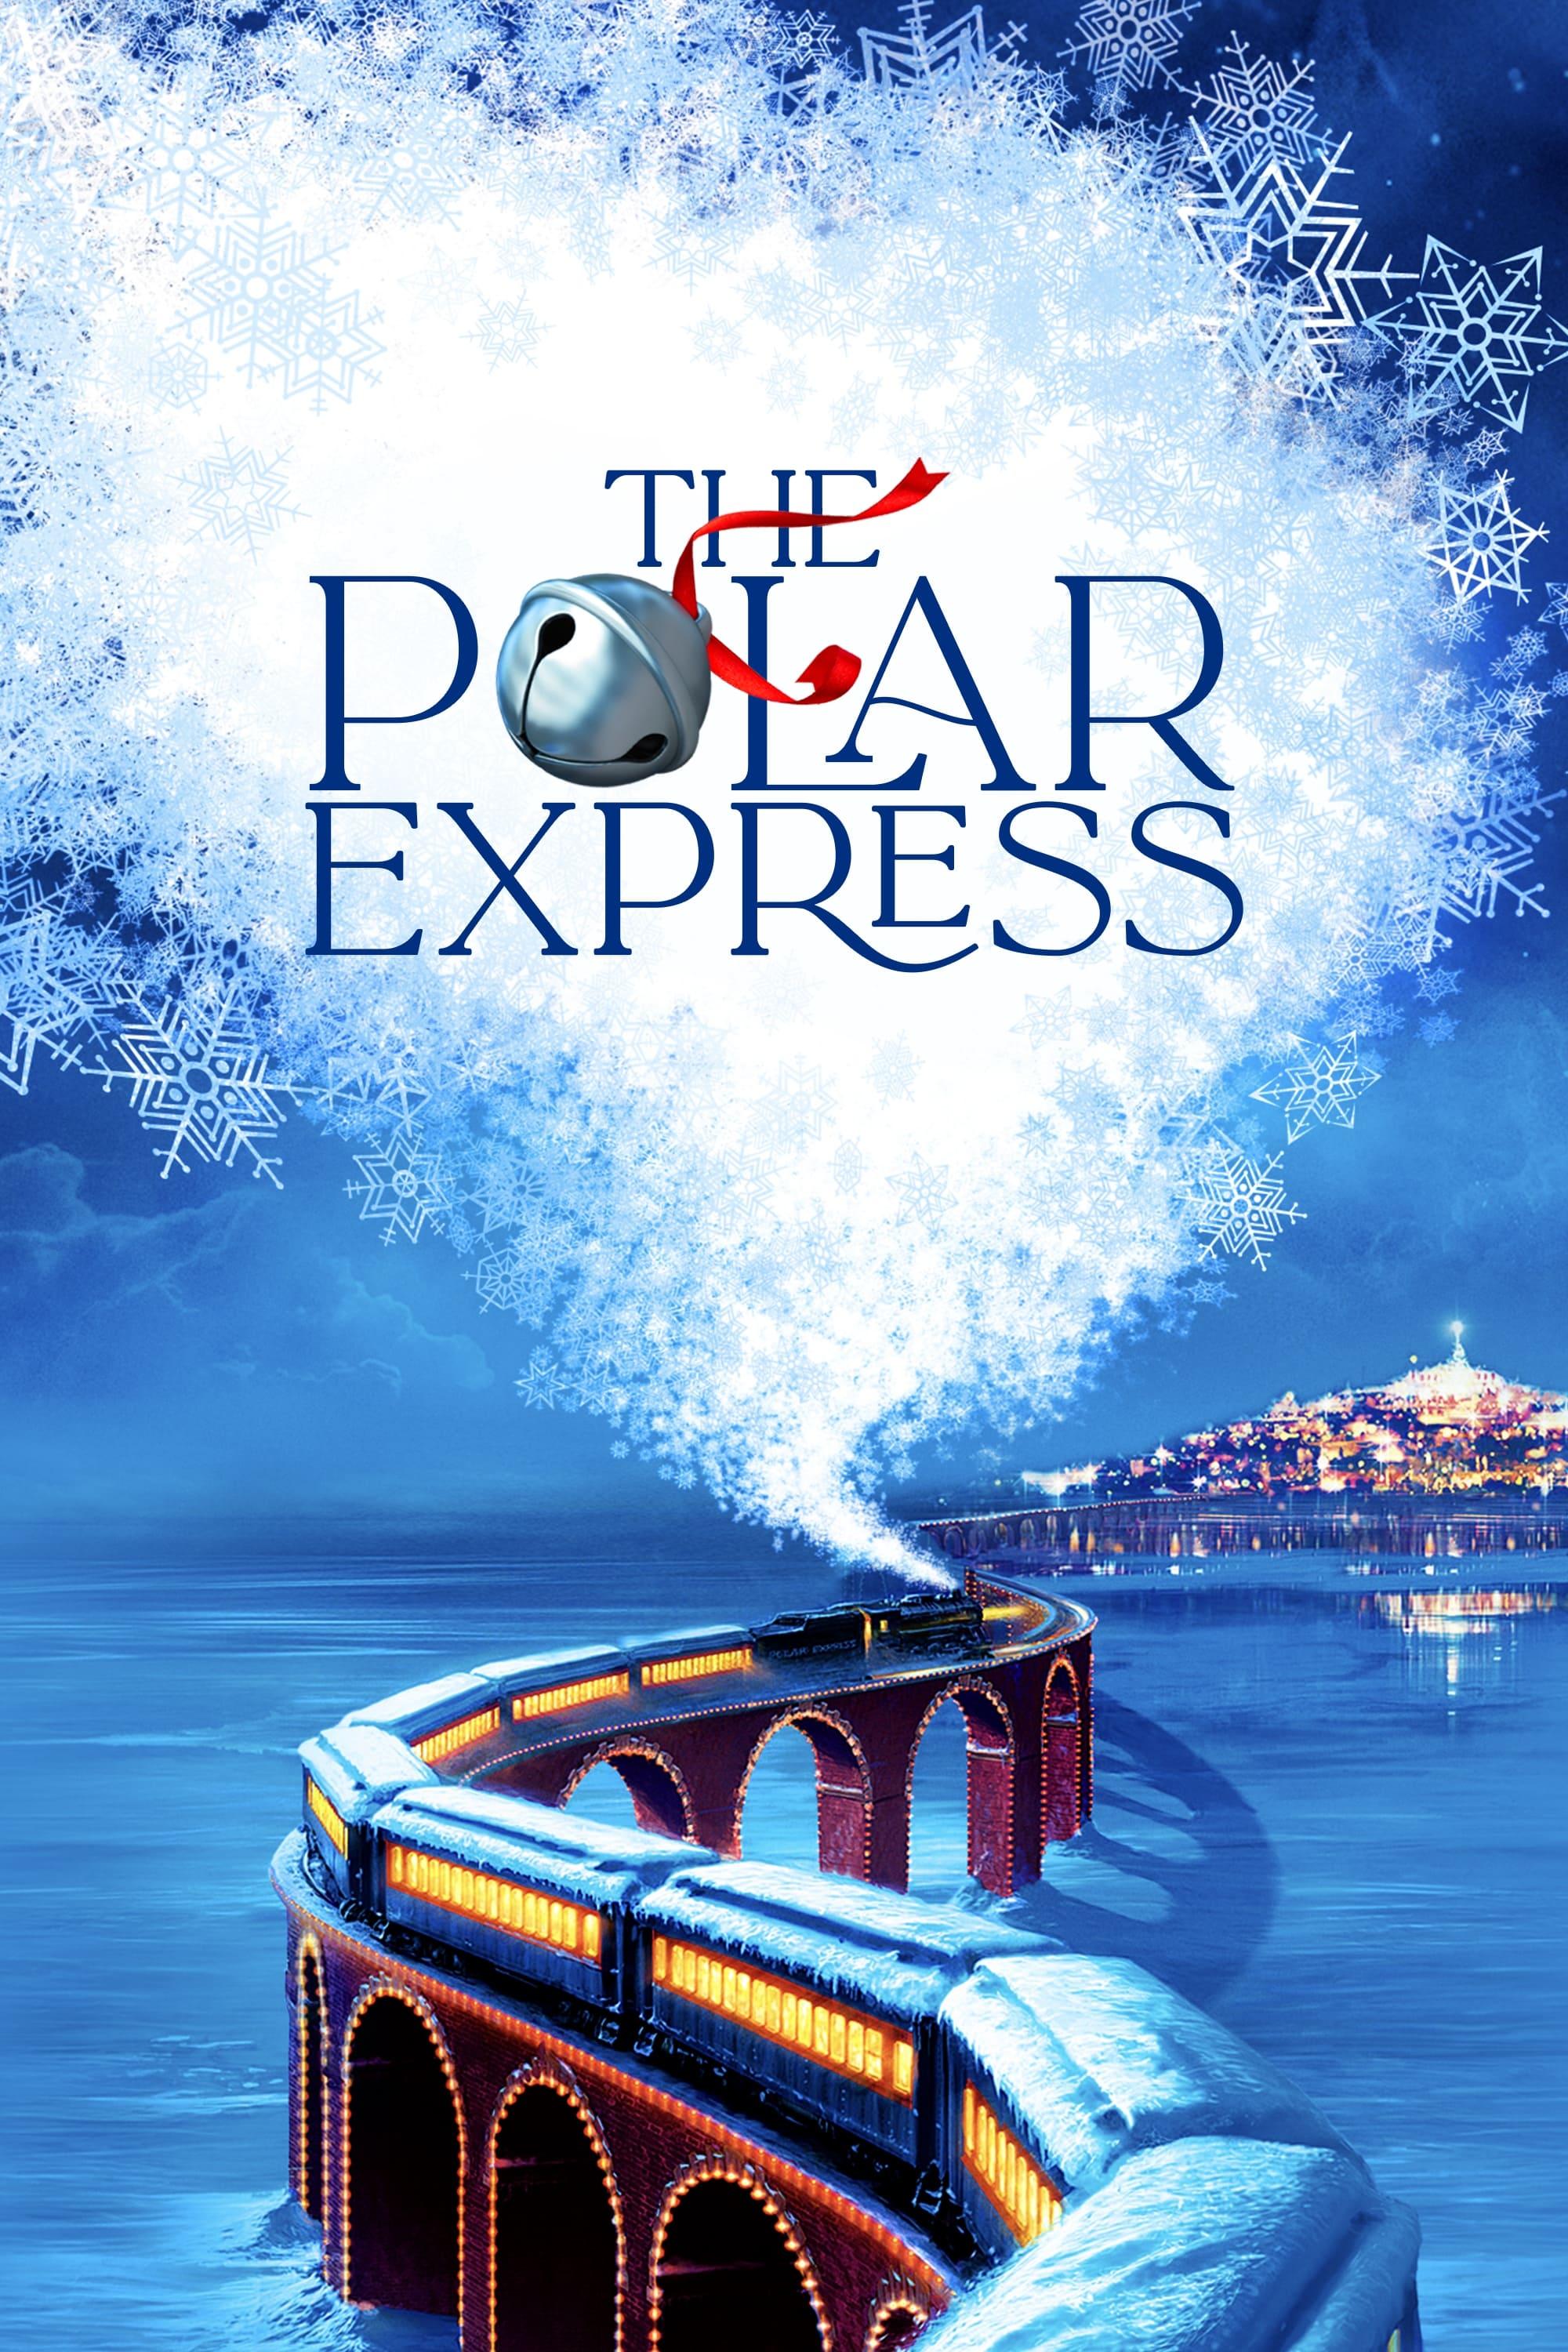 The Polar Express poster